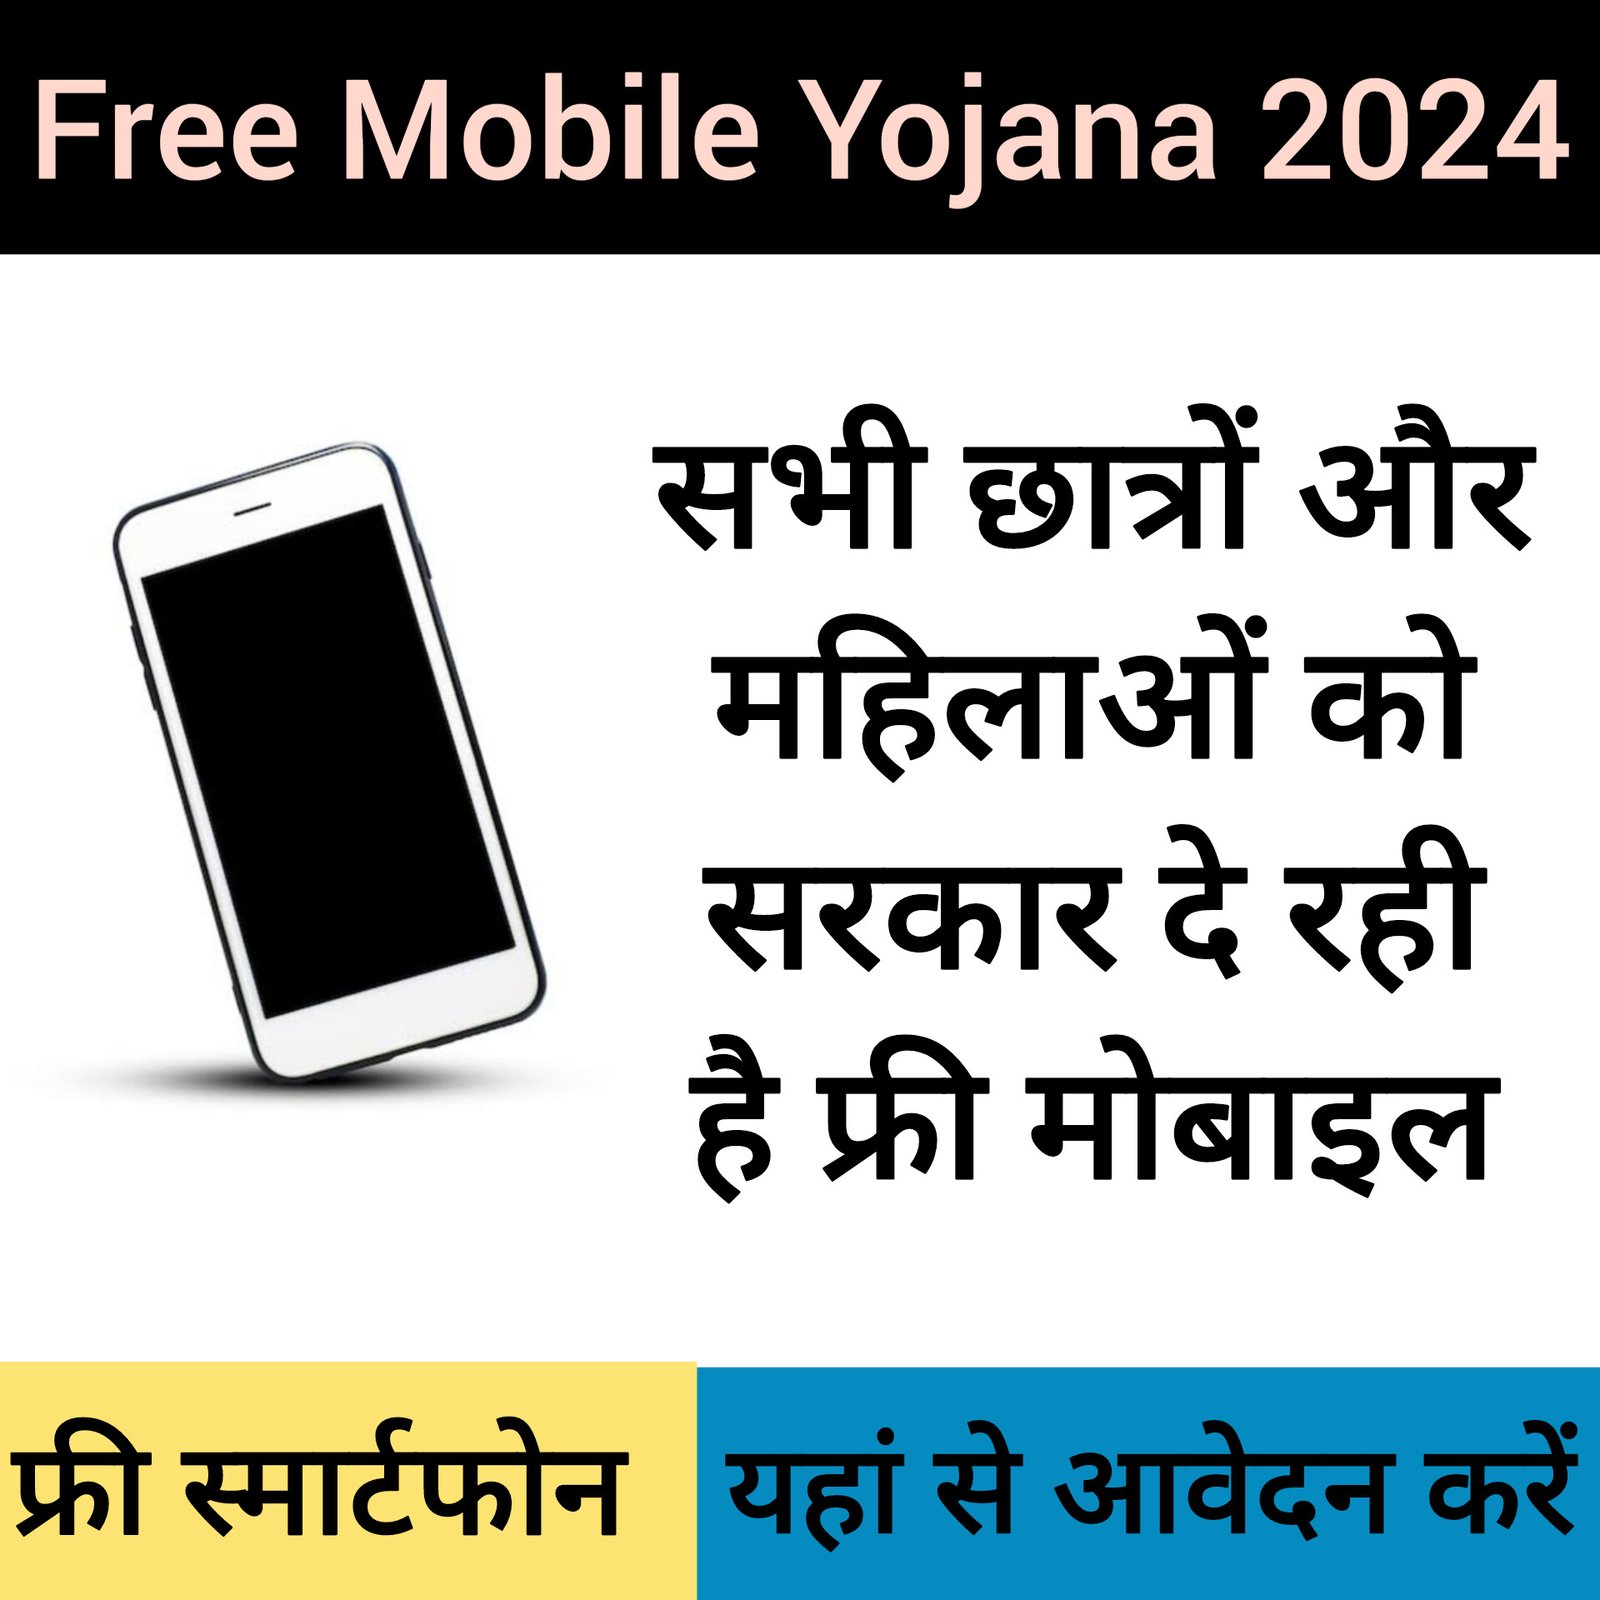 Free Mobile Yojana 2024 - Free Smartphone